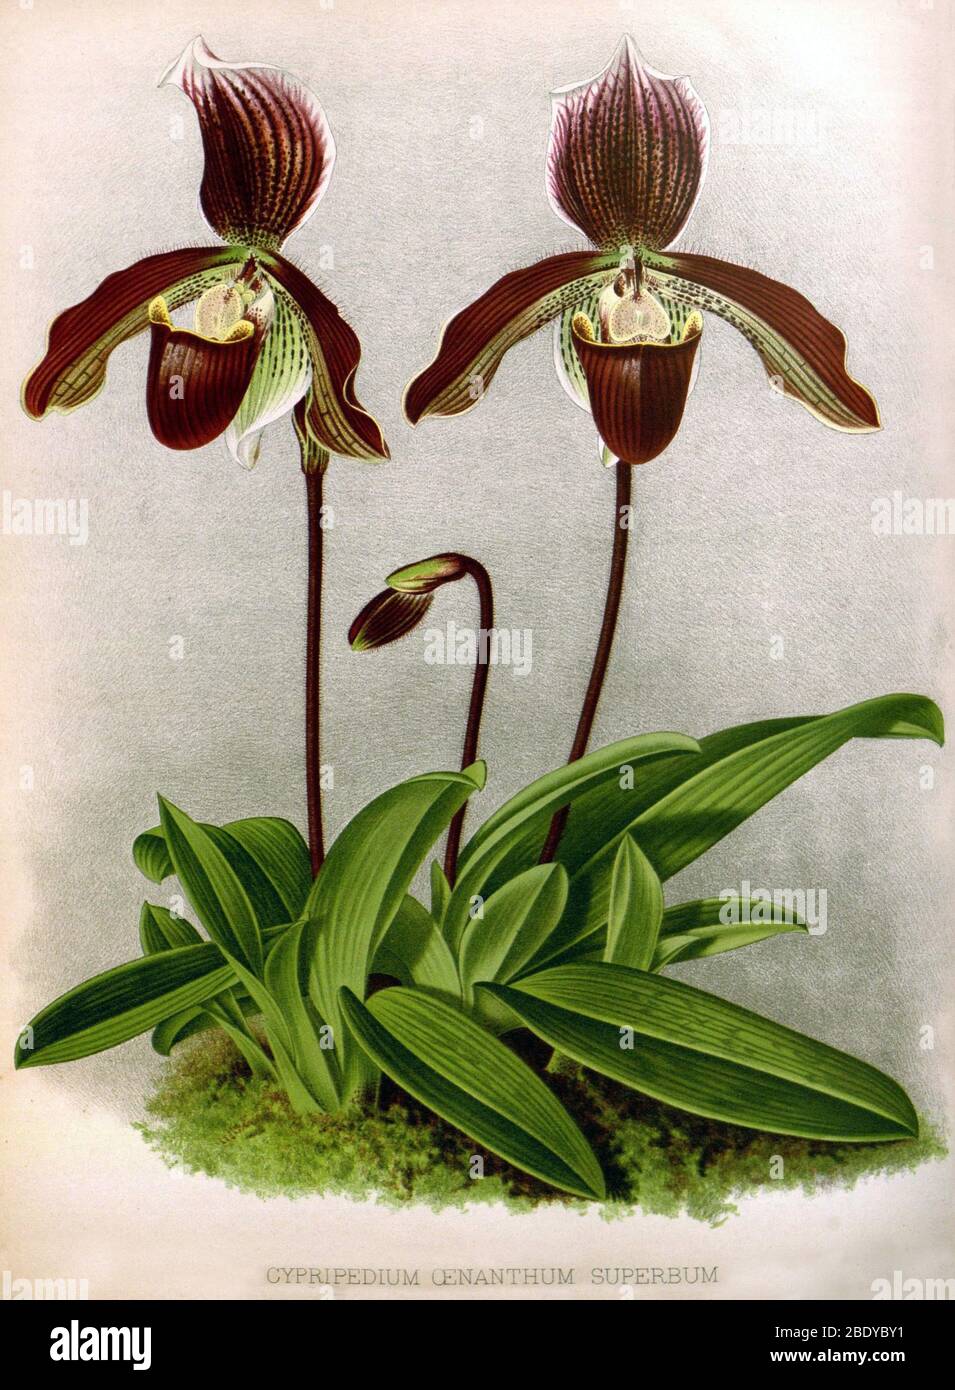 Orchid, C. oenanthum superbum, 1891 Stock Photo